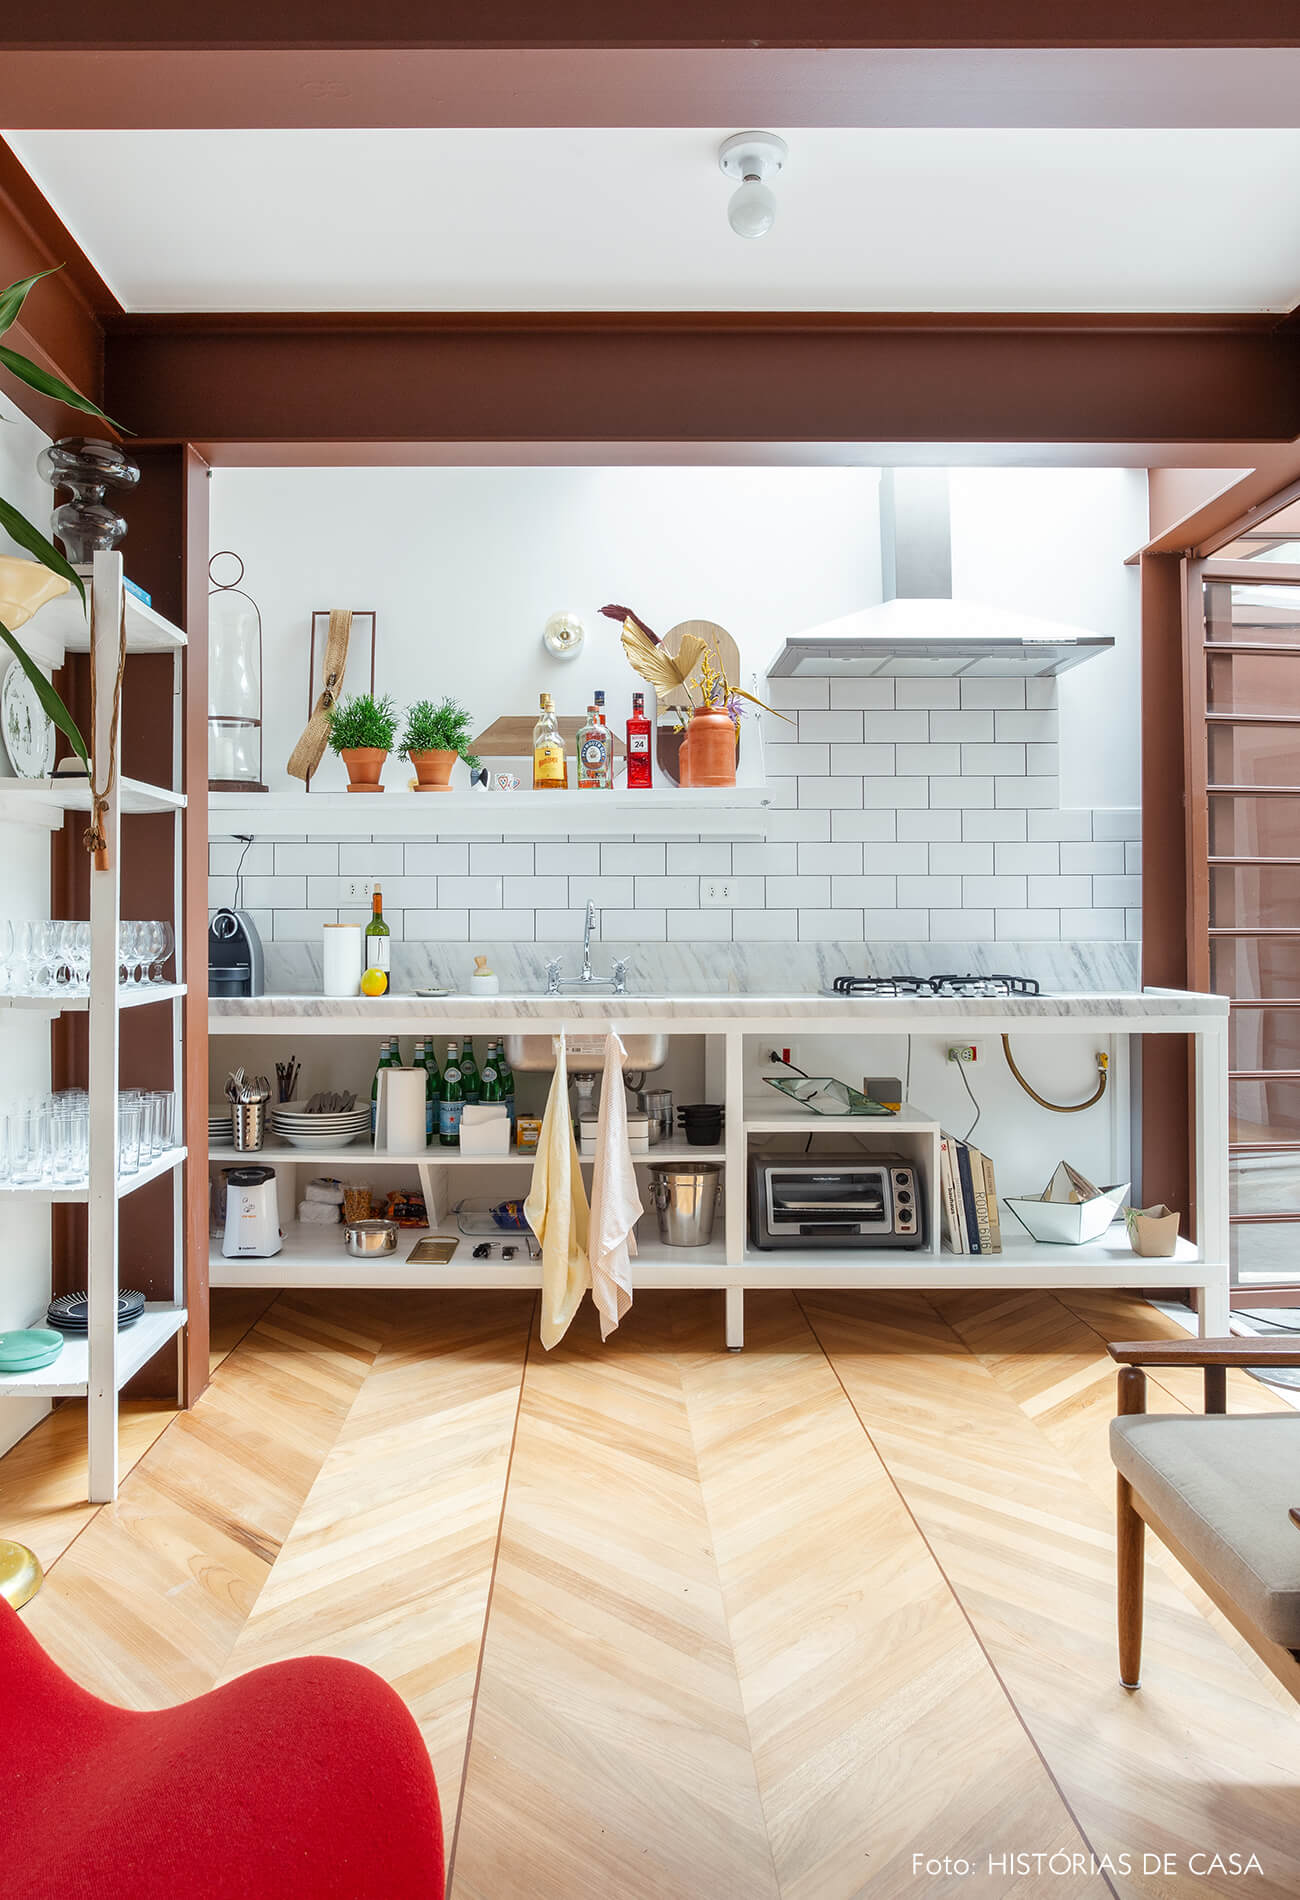 Casa com cozinha integrada e piso espinha de peixe